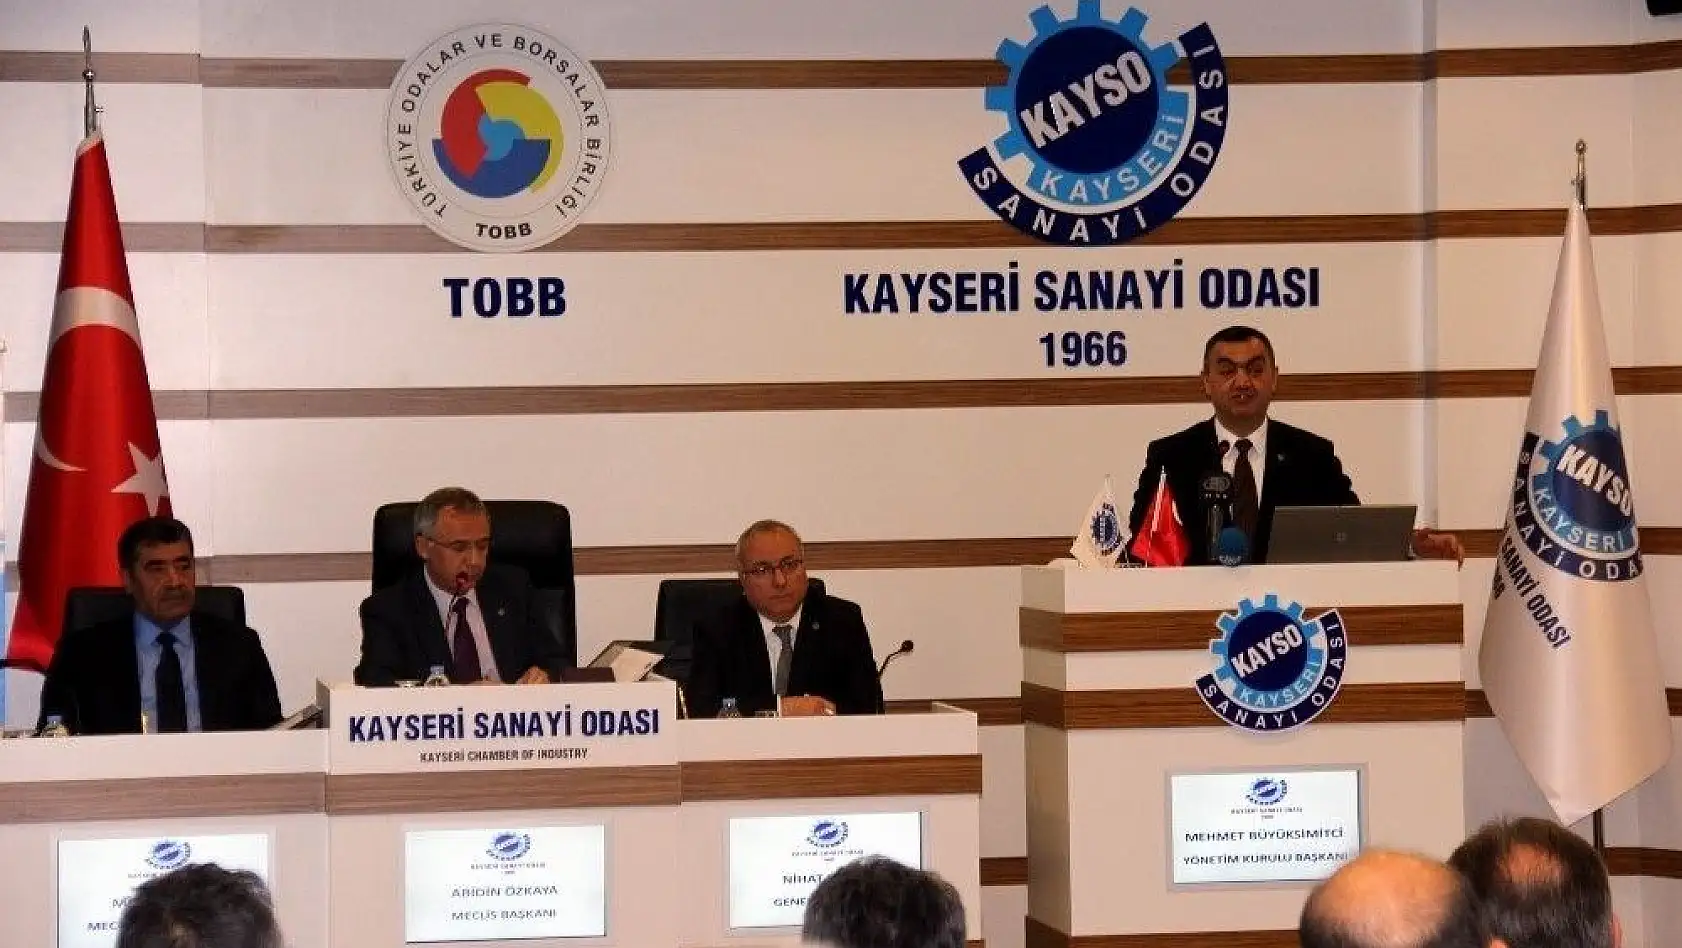 KAYSO Yönetim Kurulu Başkanı Mehmet Büyüksimitçi: 'Sanayisi olmayan hiçbir ülkenin başarı şansı yok'
